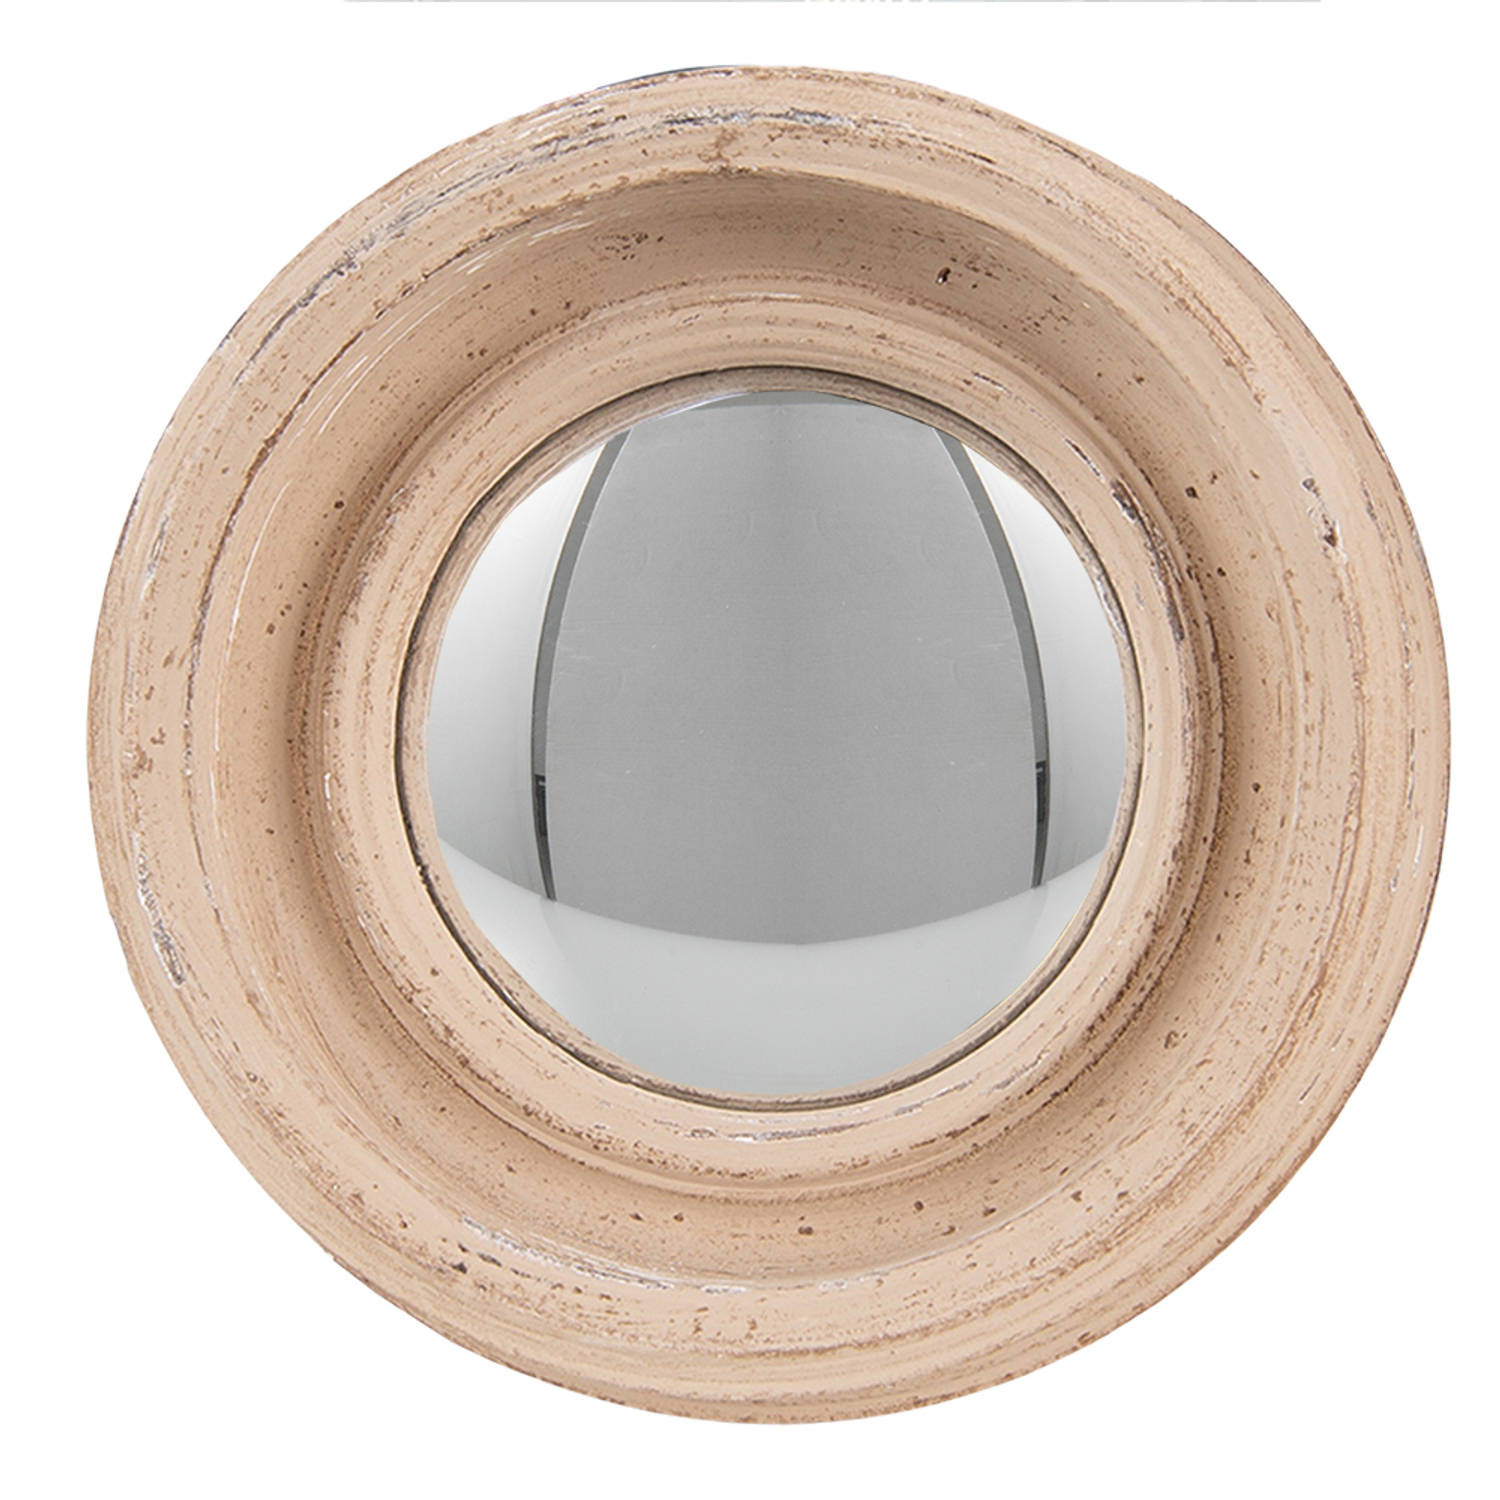 HAES DECO - Bolle ronde Spiegel - Kleur Beige - Formaat Ø 16x4 cm - Materiaal Hout / Glas - Wandspiegel, Spiegel rond, Convex Glas